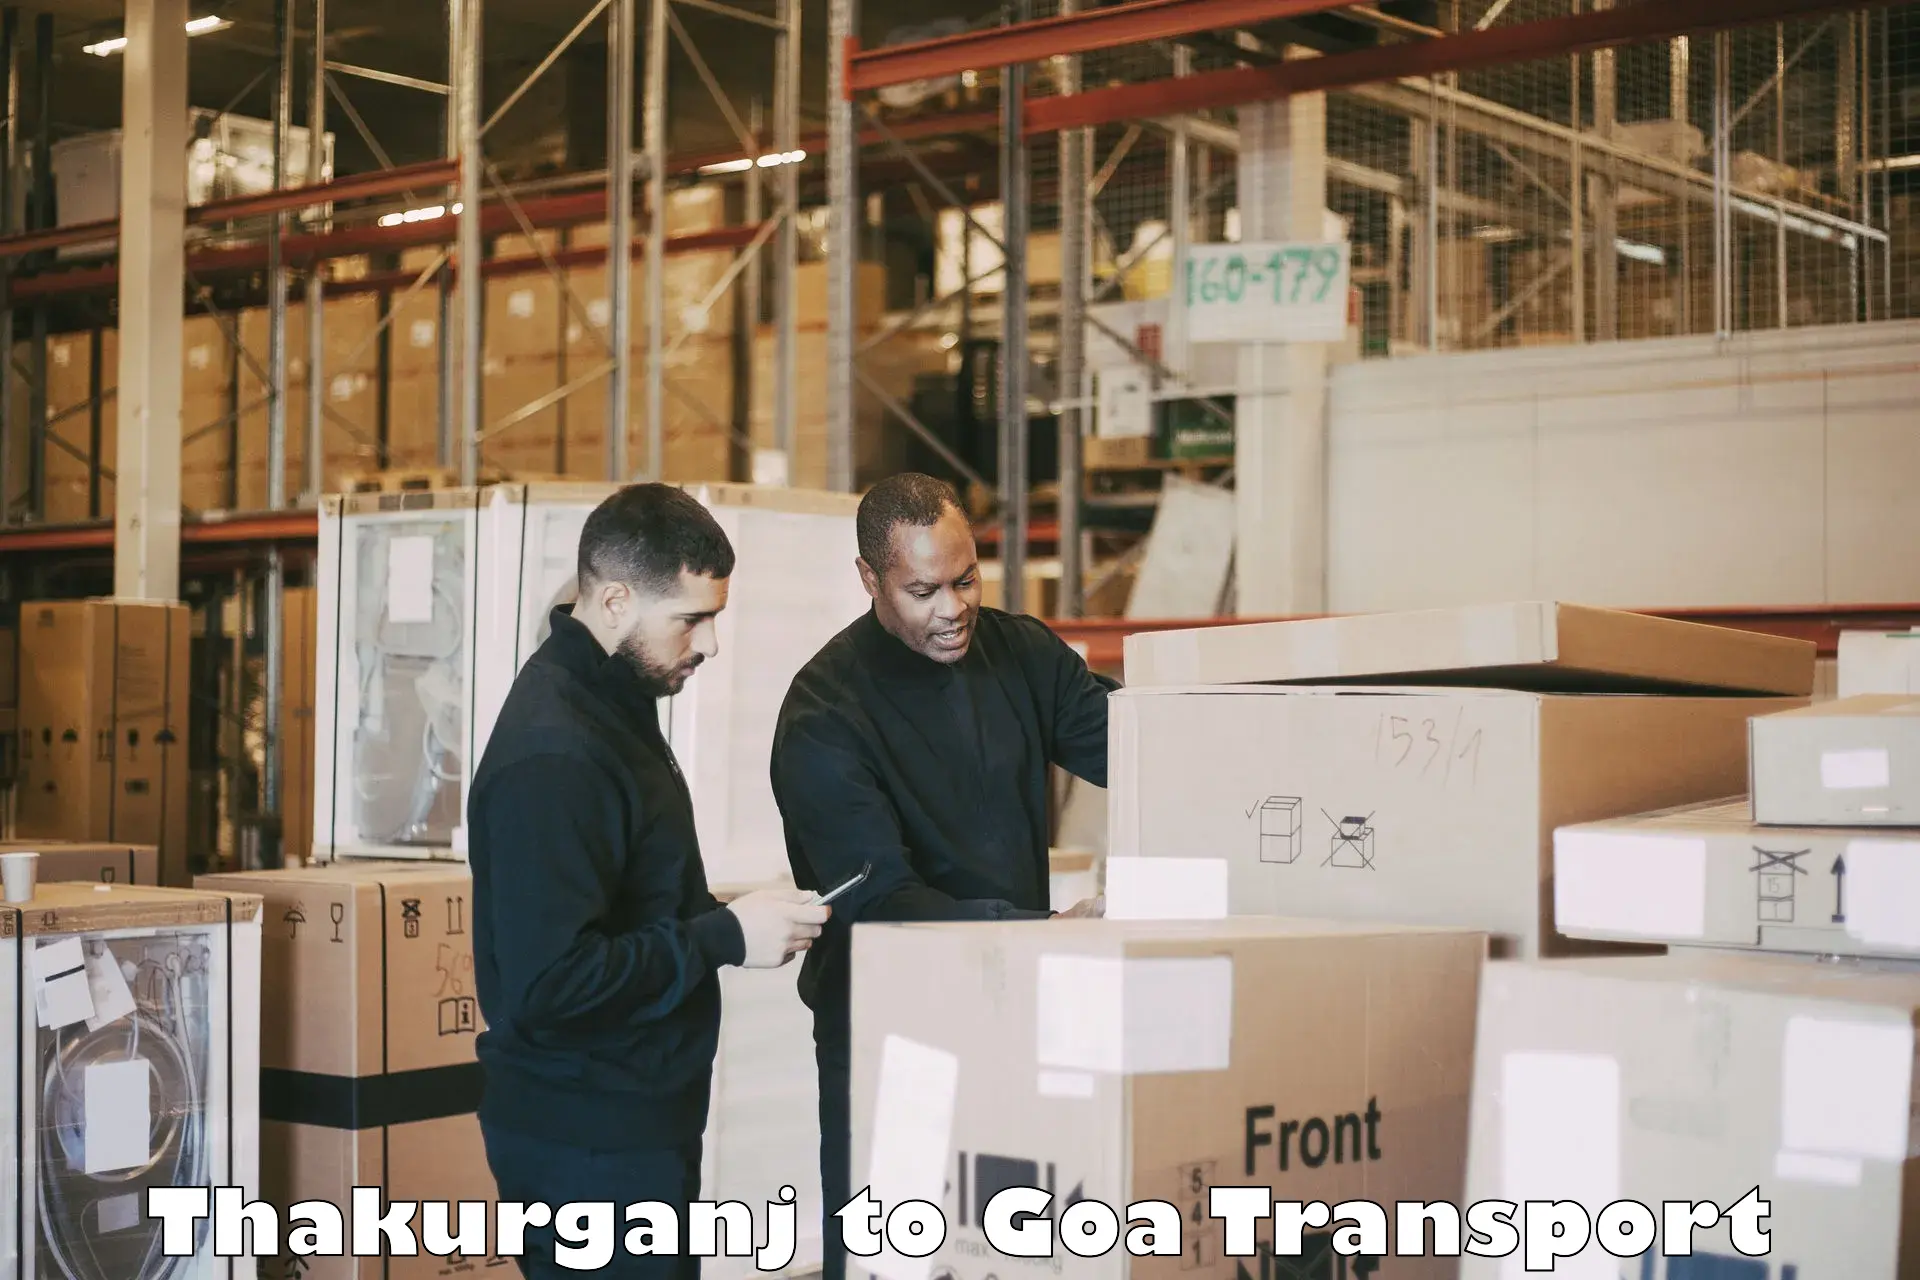 Commercial transport service Thakurganj to Vasco da Gama